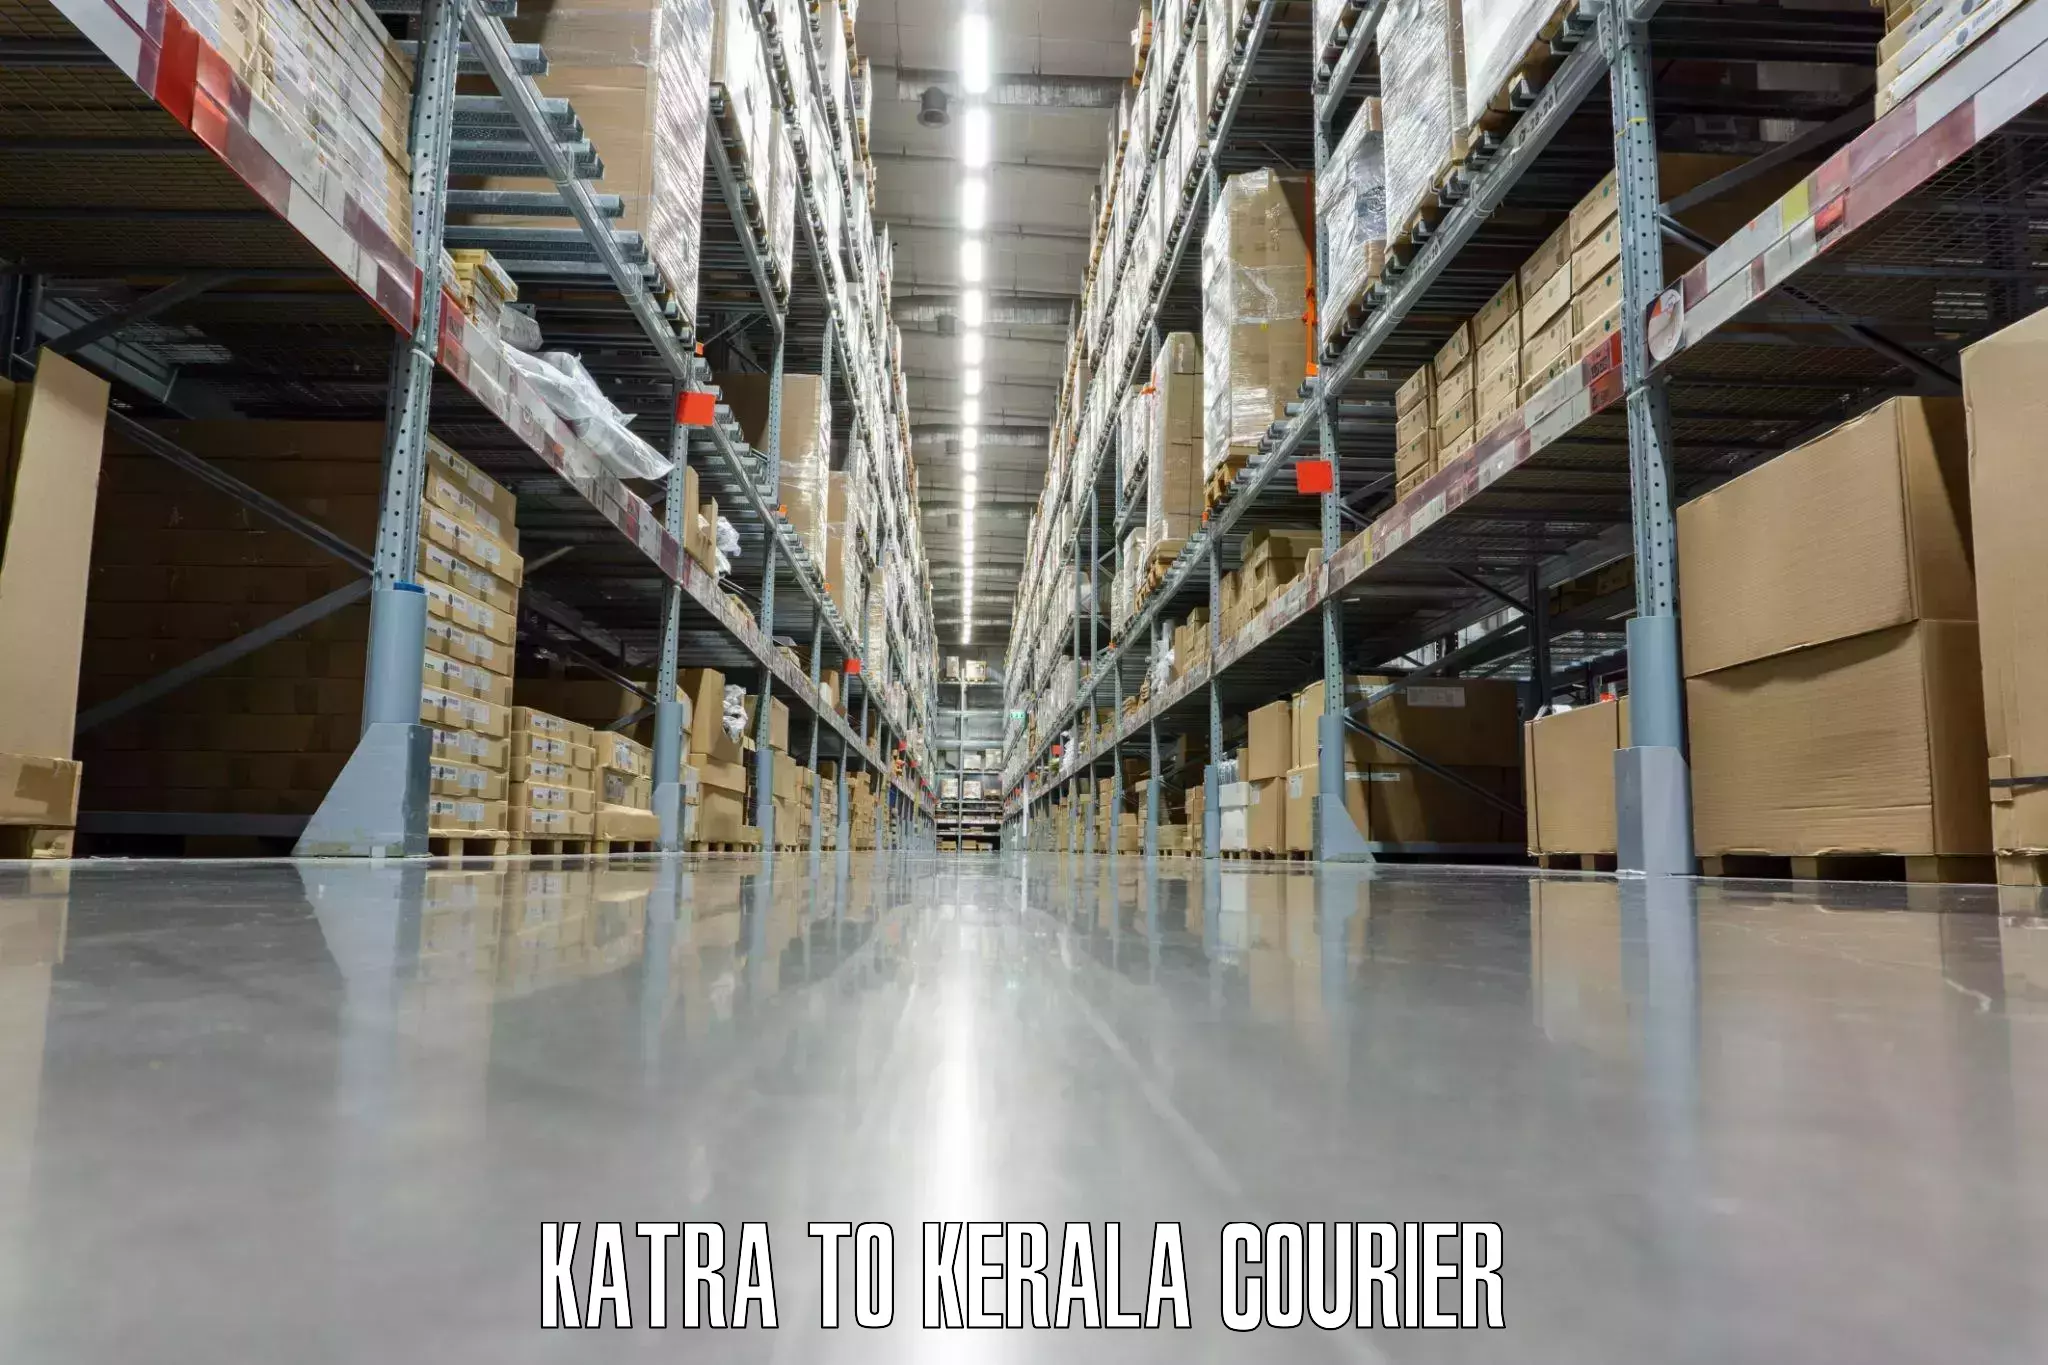 Luggage shipping estimate Katra to Kerala